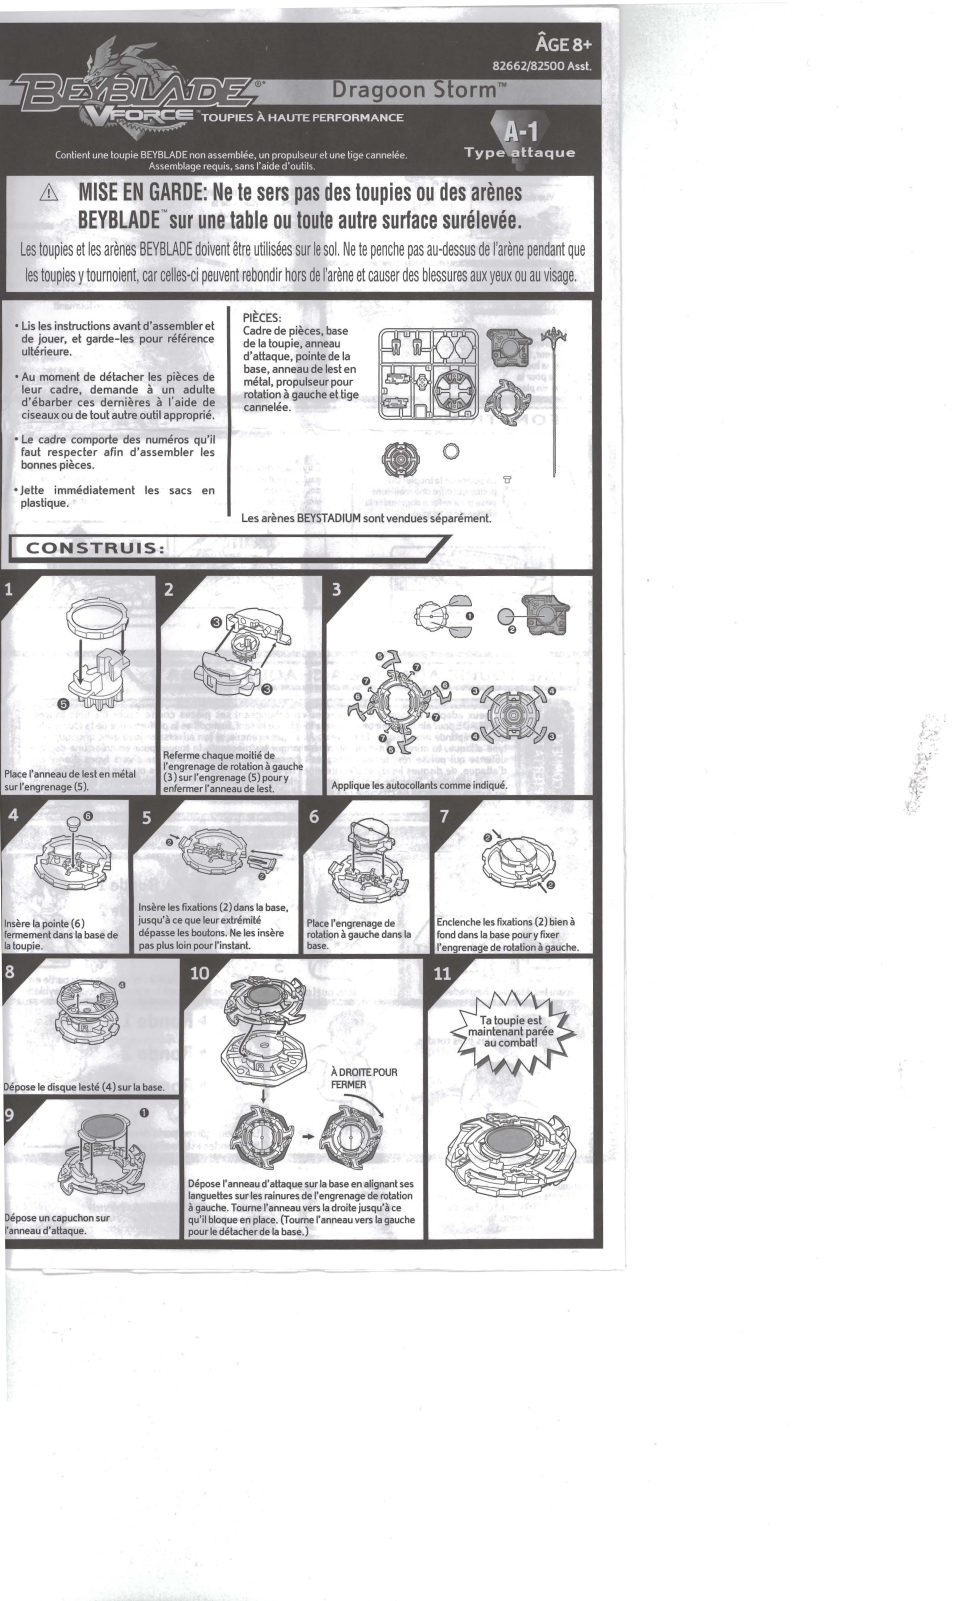 Hasbro 2003 User Manual